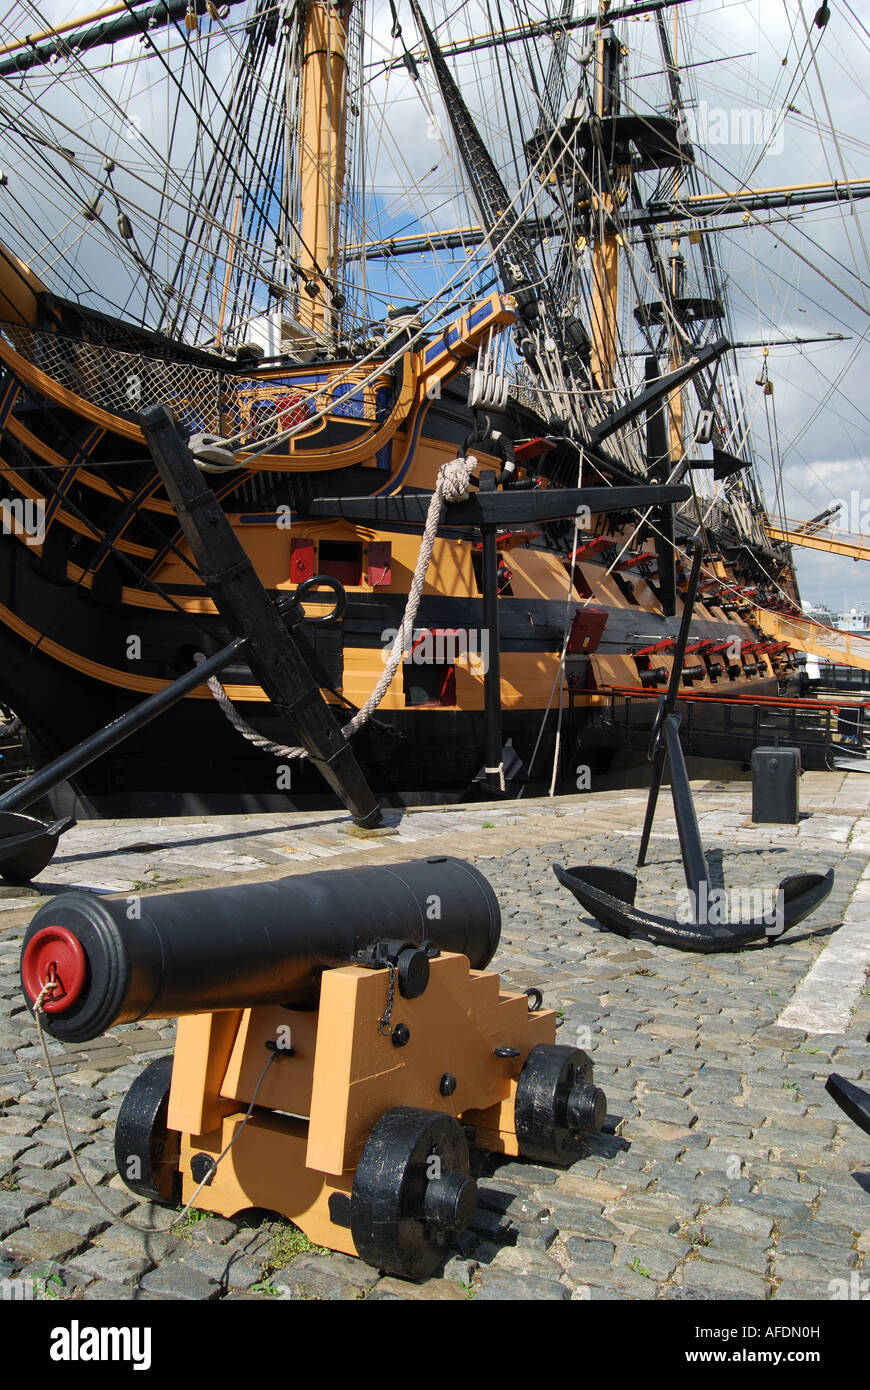 Tourelles canon, Nelson's célèbre navire amiral, le HMS Victory, historique de Portsmouth, Portsmouth, Hampshire, Angleterre, Royaume-Uni Banque D'Images